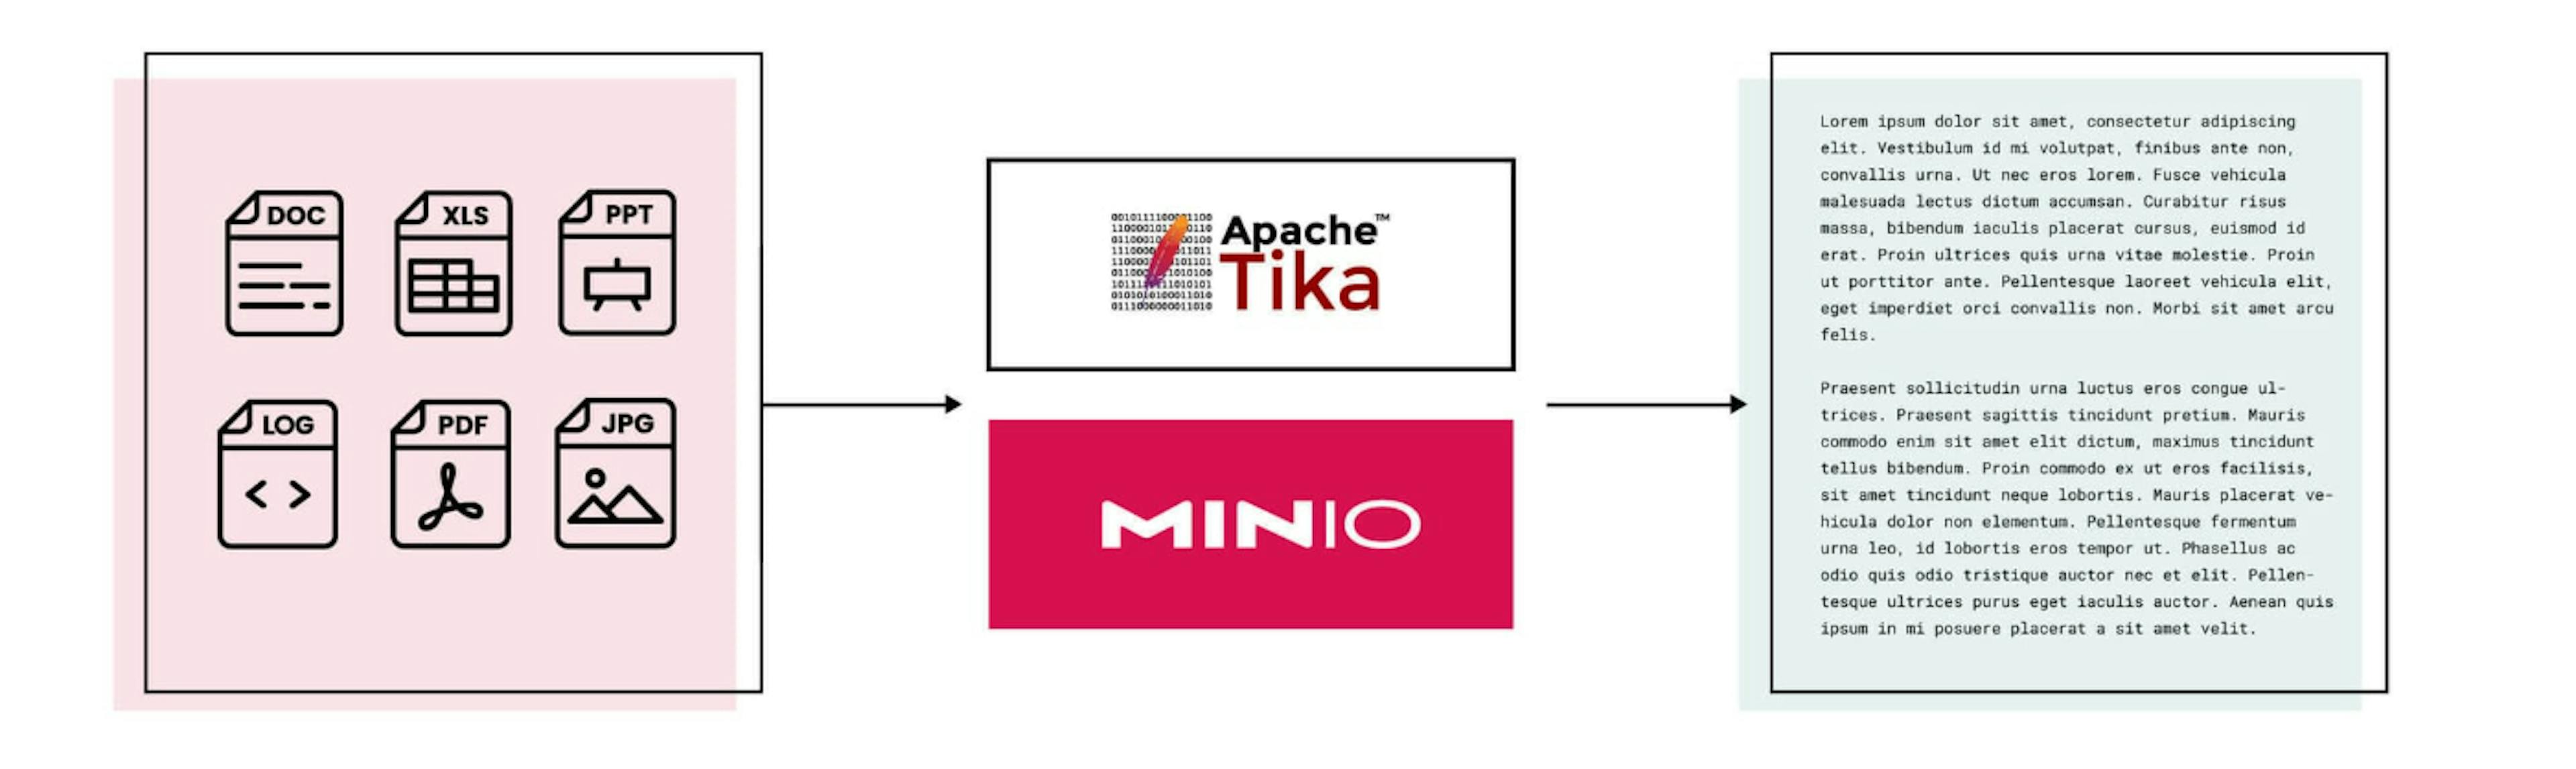 featured image - Nutzung von MinIO und Apache Tika zur automatischen Textextraktion und -analyse